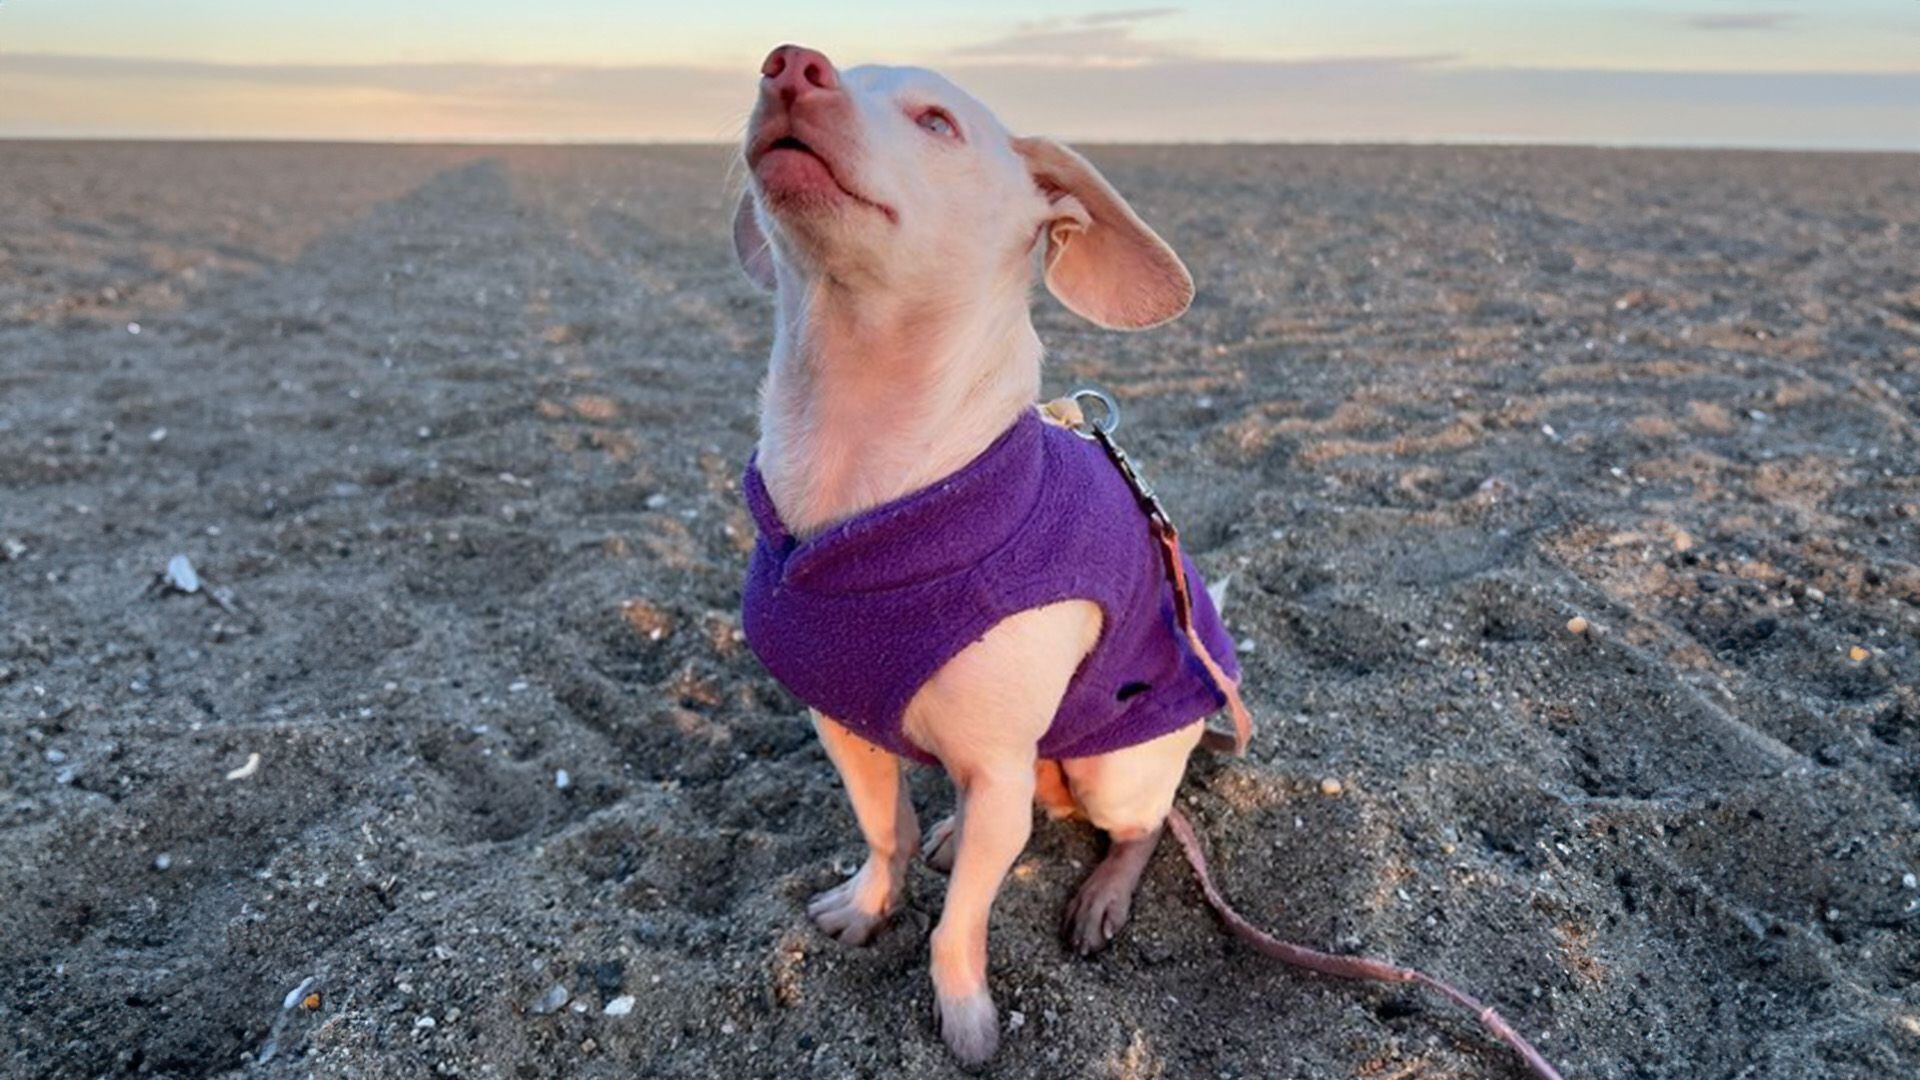 Piglet es un perro ciego y sordo que inspiró a su dueña a salvar animales a través de su fundación.